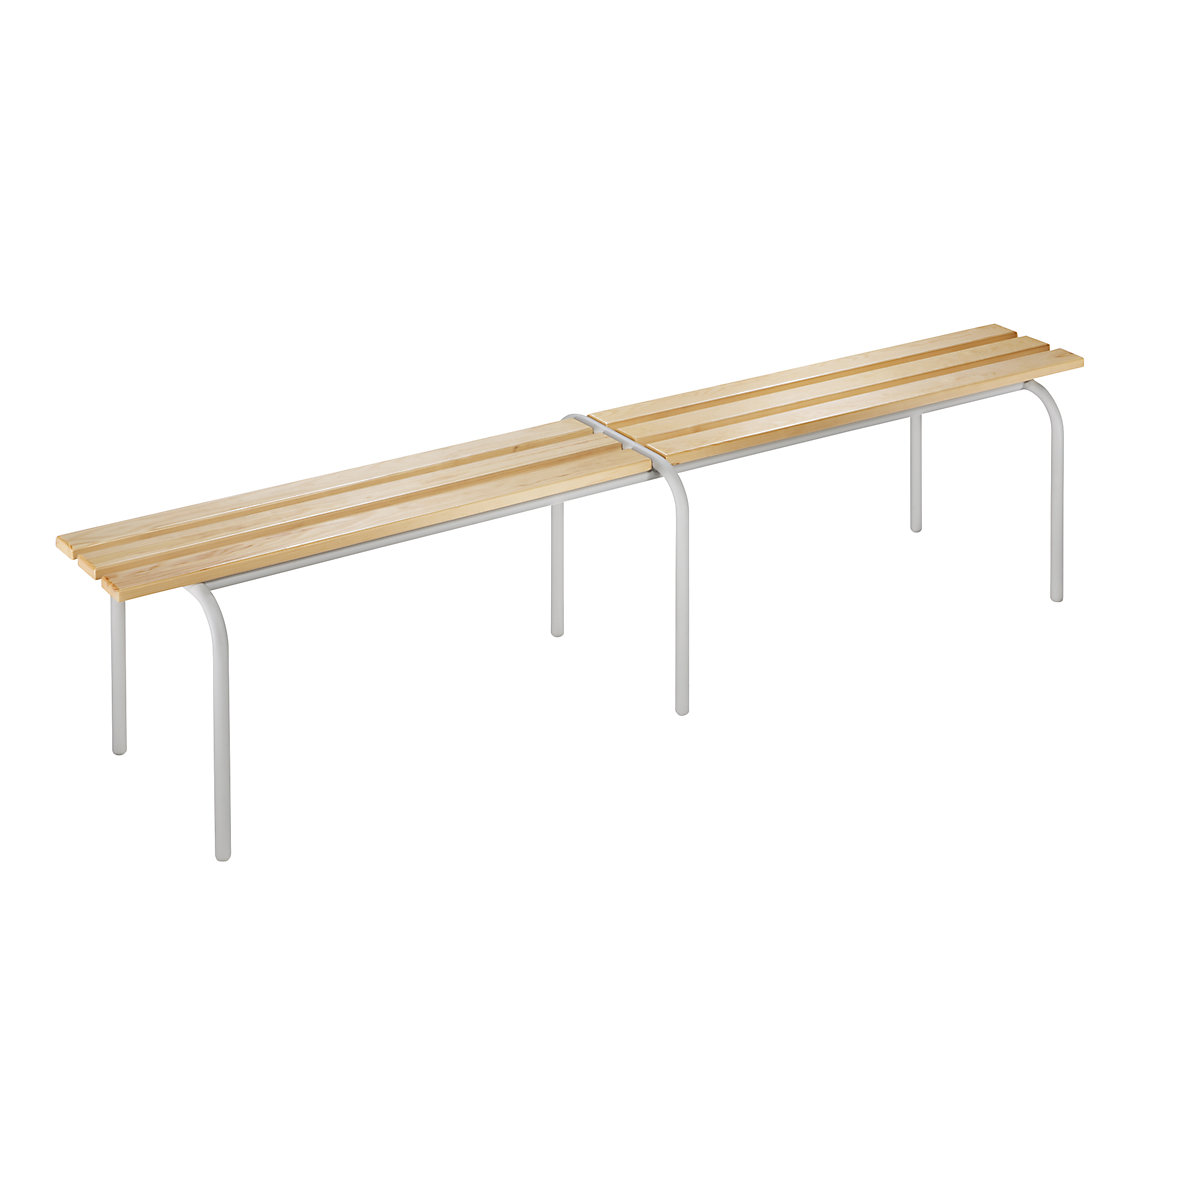 Cloakroom bench, stackable, clear varnished solid wood slats, length 2000 mm, light grey frame